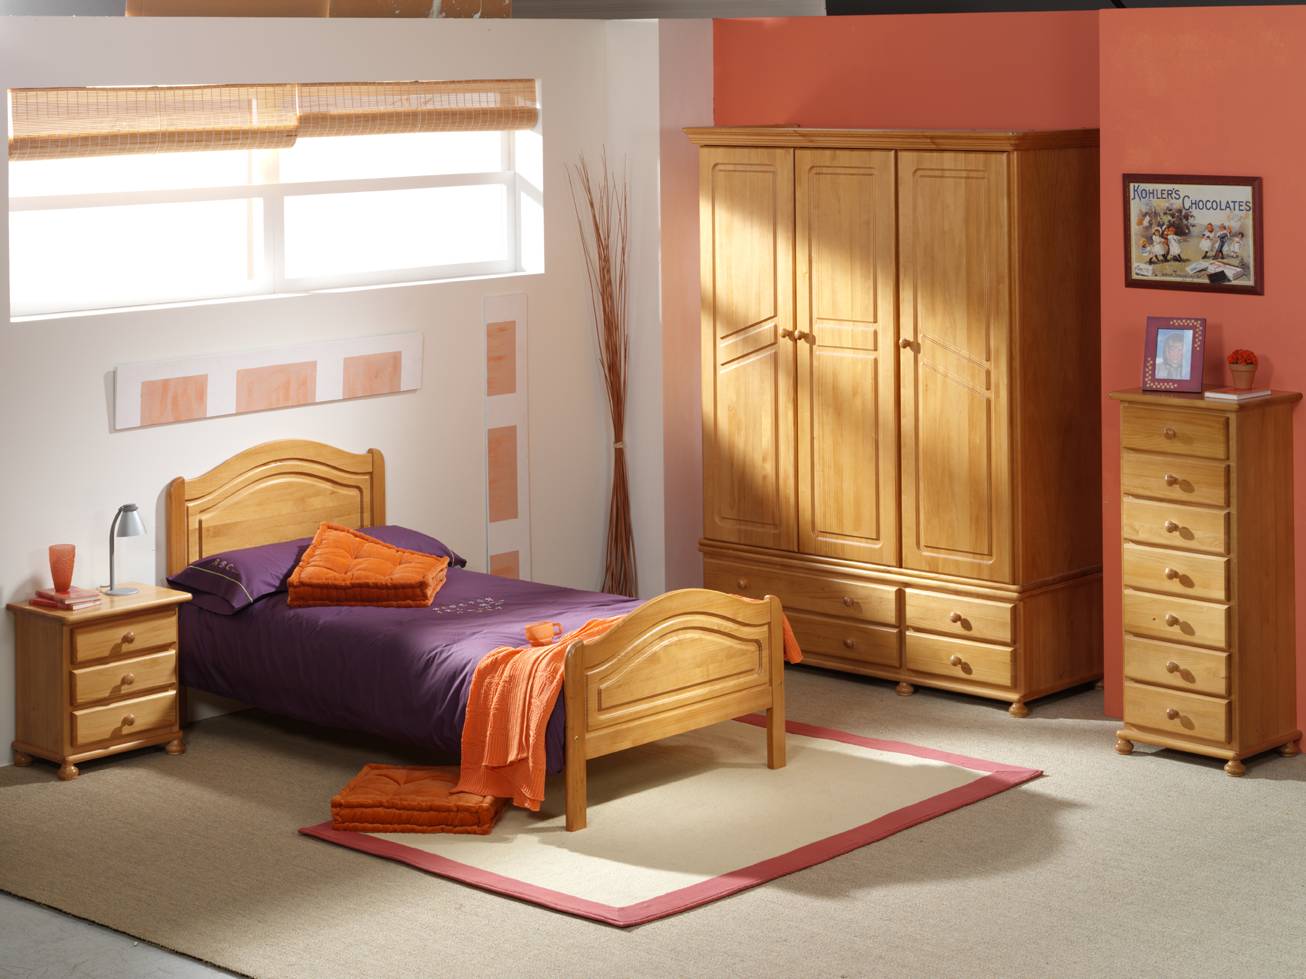 Xinfonier Pino 50 cm. - Sifonier 7 cajones para dormitorio juvenil o matrimonio, de madera de pino maciza, pintado en una amplia gama de colores